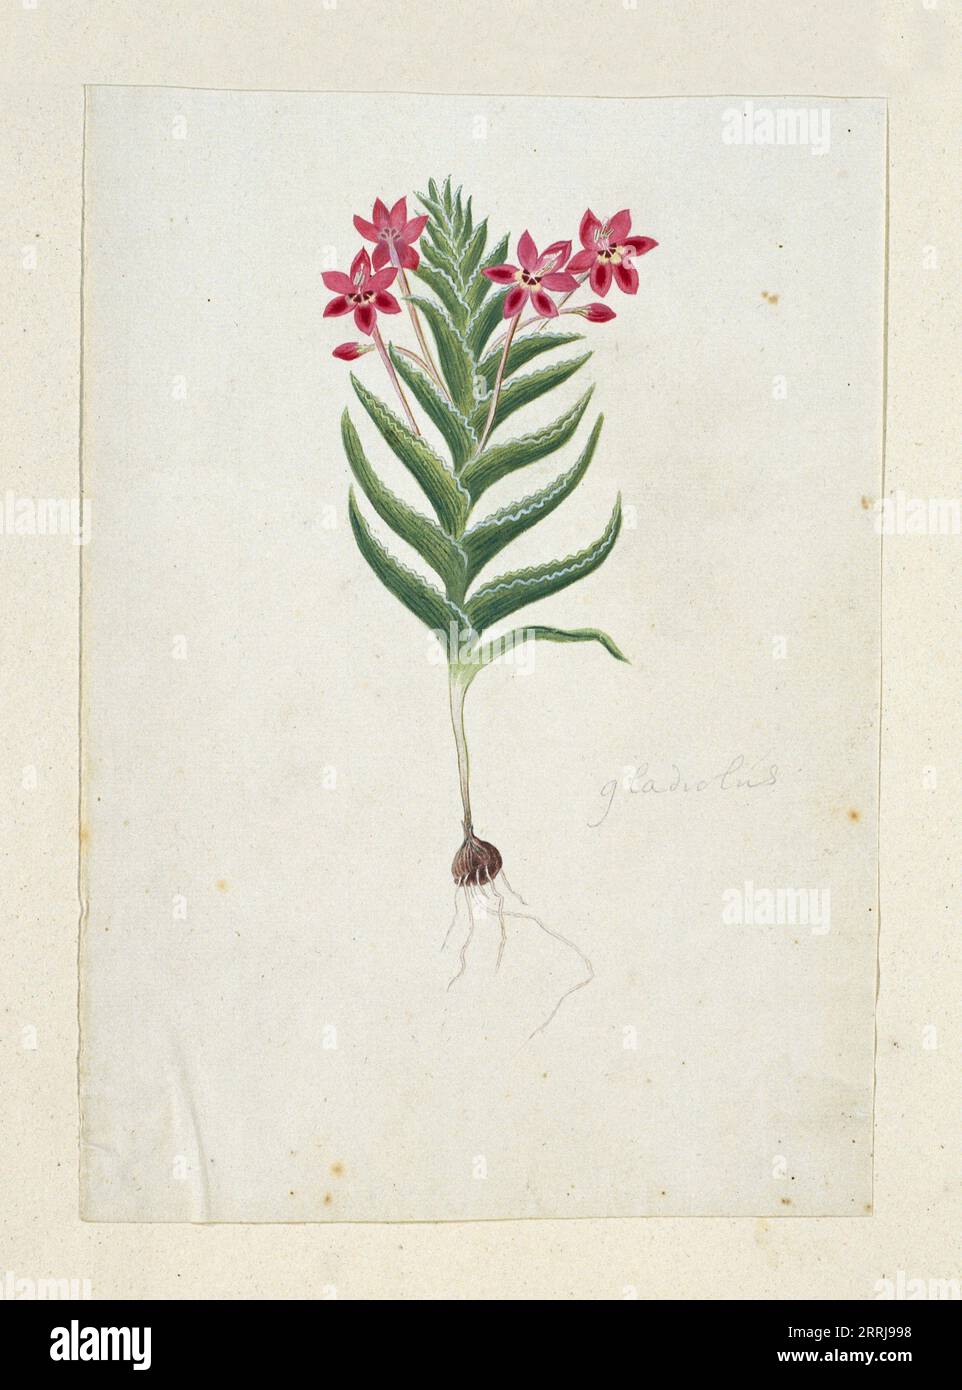 Lapeirousia silenoides (Jacq.) Ker Gawl., 1777-1786. Stock Photo